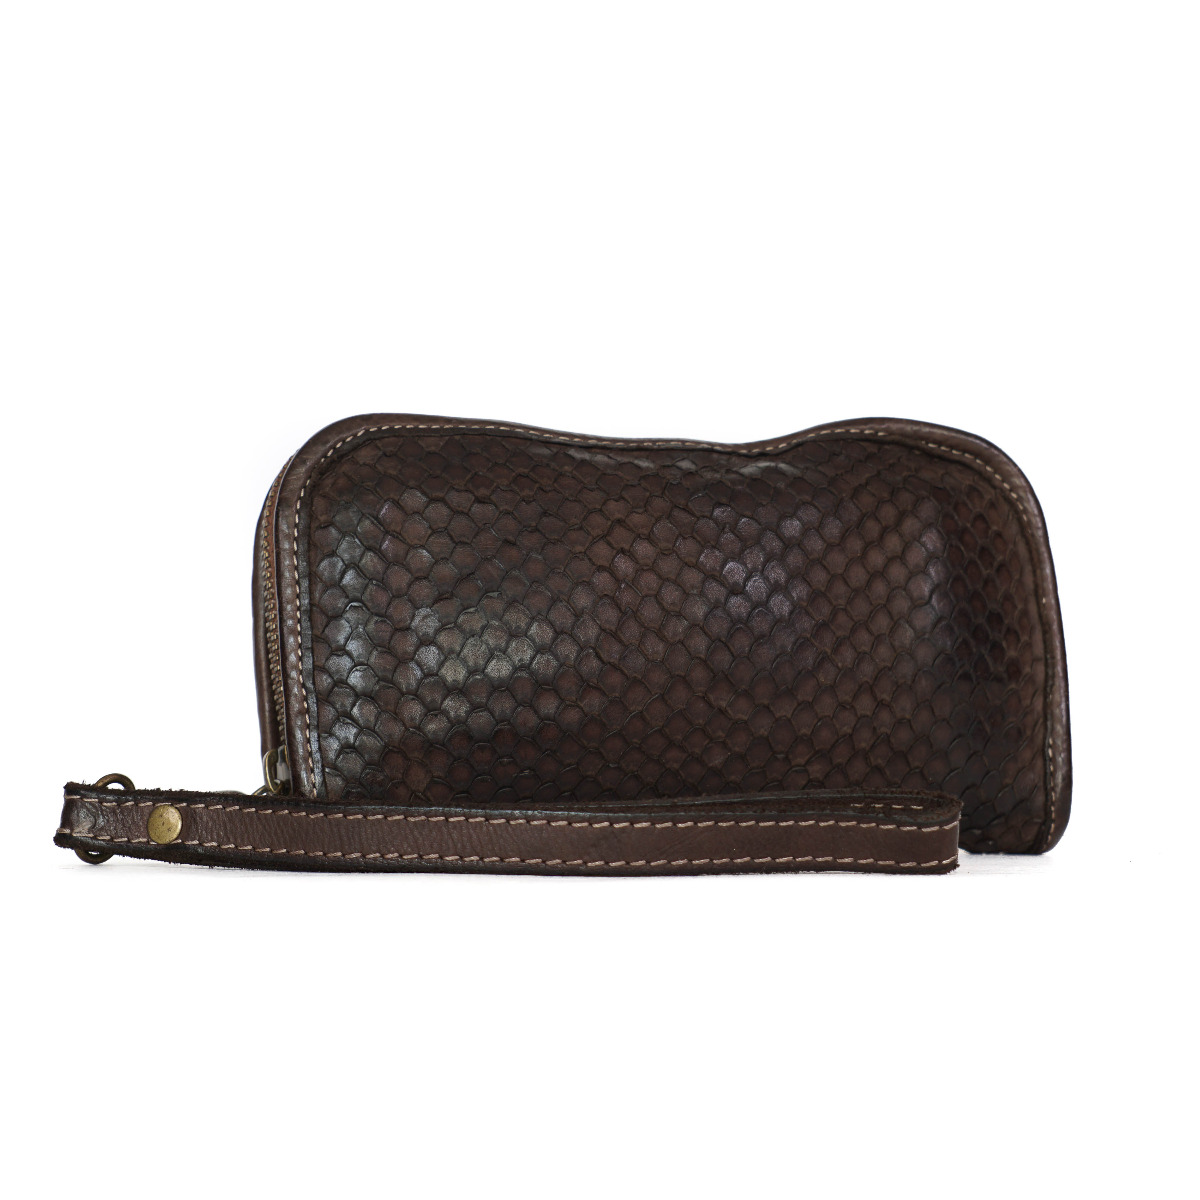 Dark brown python skin imitation leather wallet